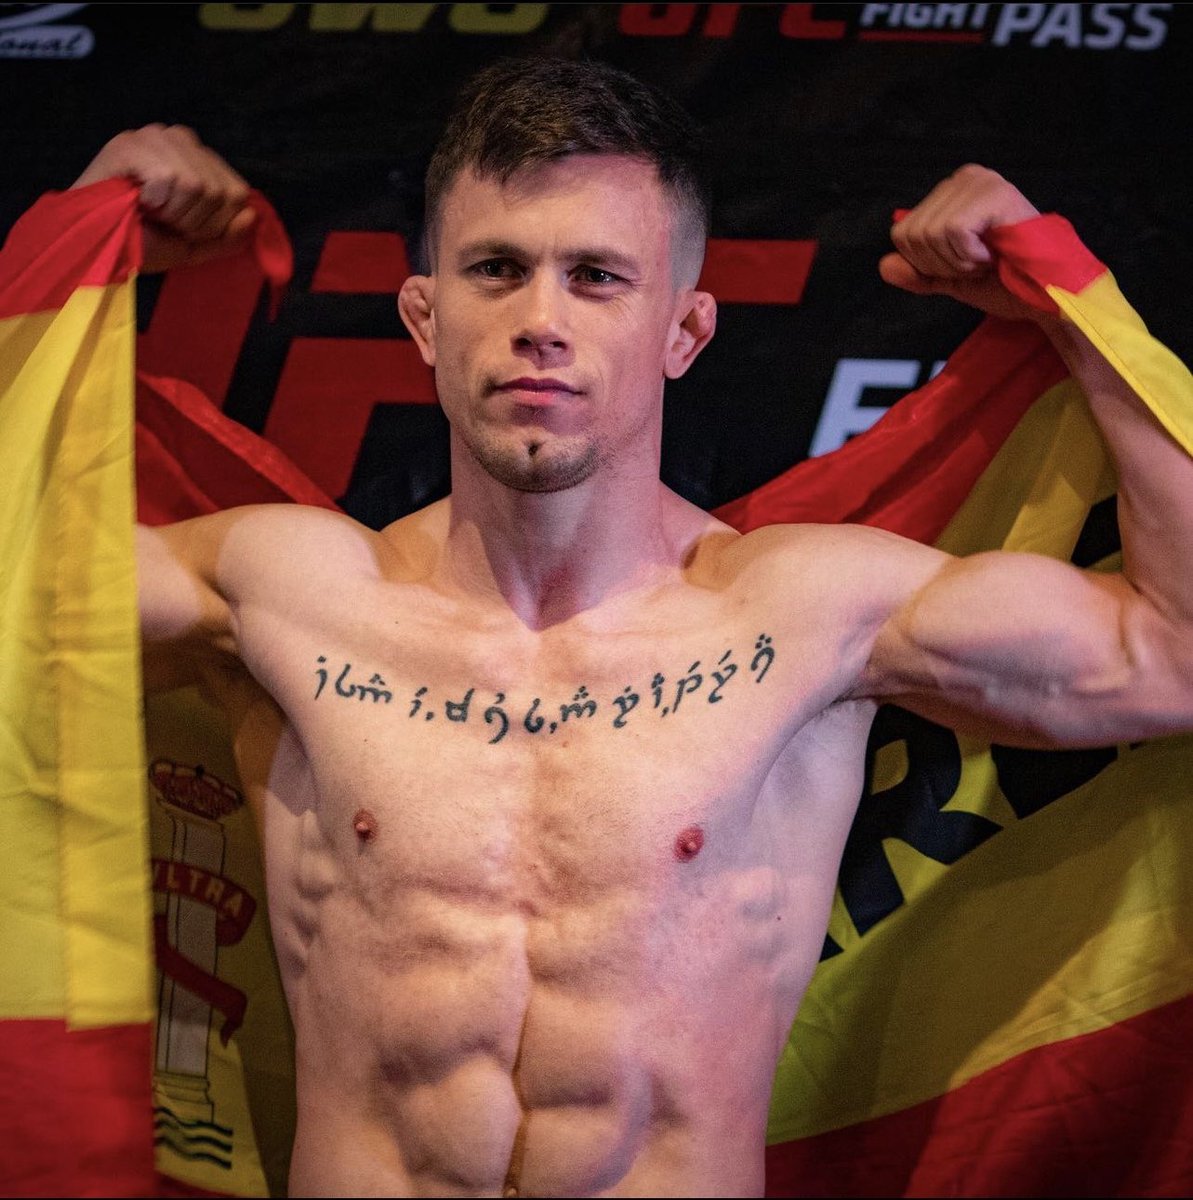 🚨🚨Confirmado‼️
@DanielBarez peleará el 22 de julio en UFC Londres frente a Jafel Filho. El brasileño peleó ante Mokaev en el UFC286.

Enhorabuena Dani. Ha llegado tu momento de brillar🚀🇪🇸

(Y por si esto fuera poco…. tendremos a 2 españoles peleando en el cartel del Londres)